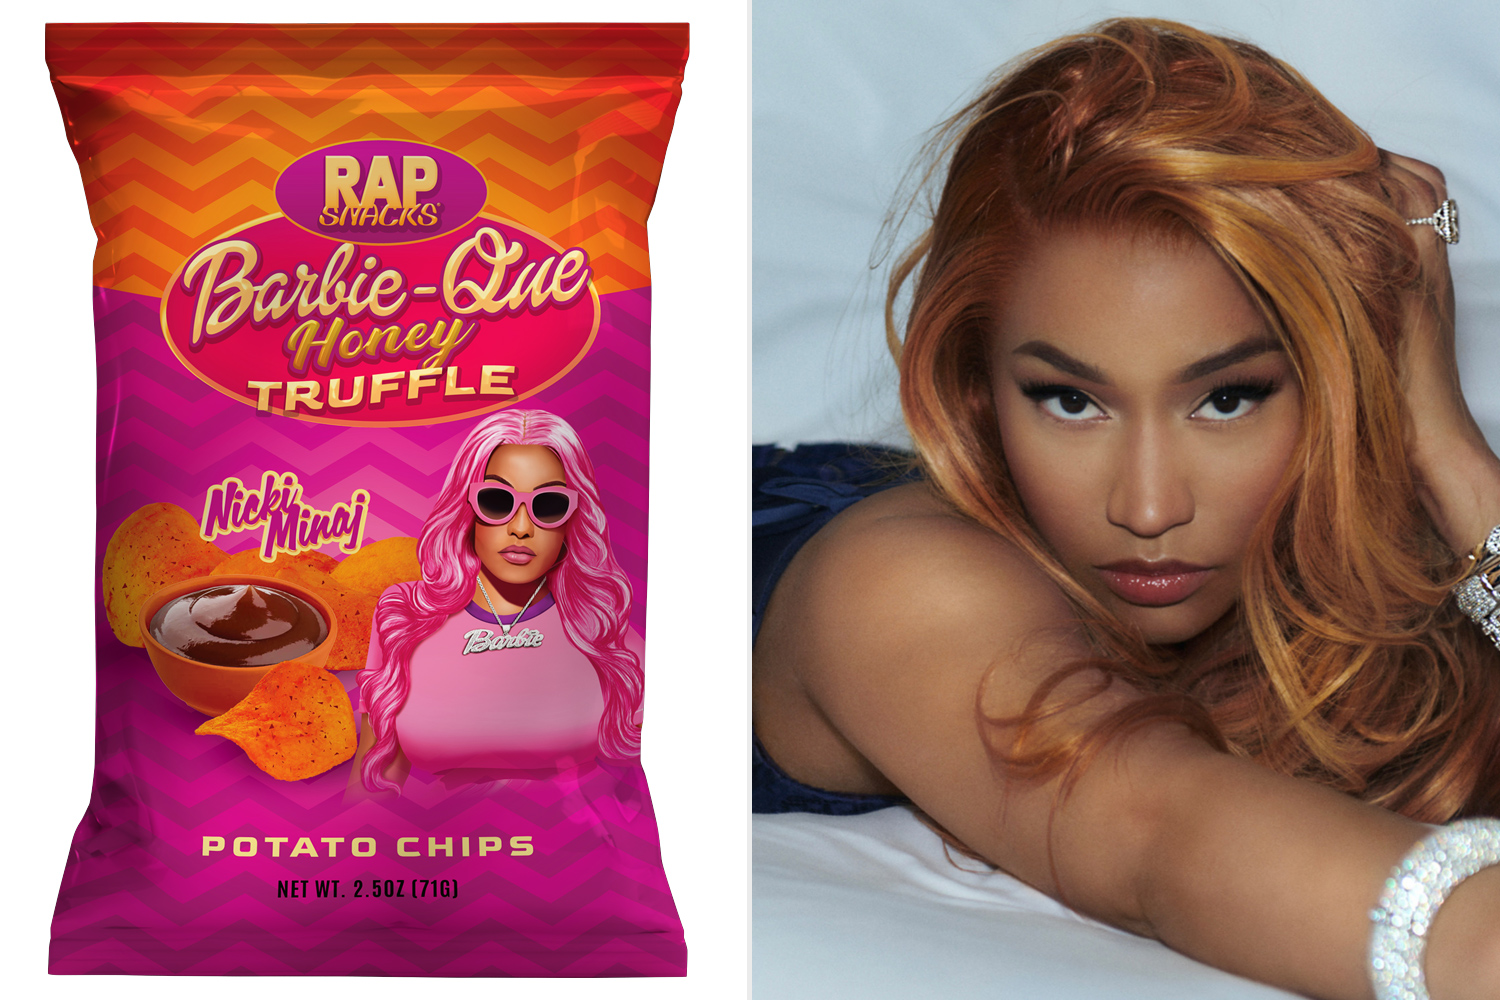 Nicki Minaj unveils new Barbie-Que Honey Trufflepotato chips